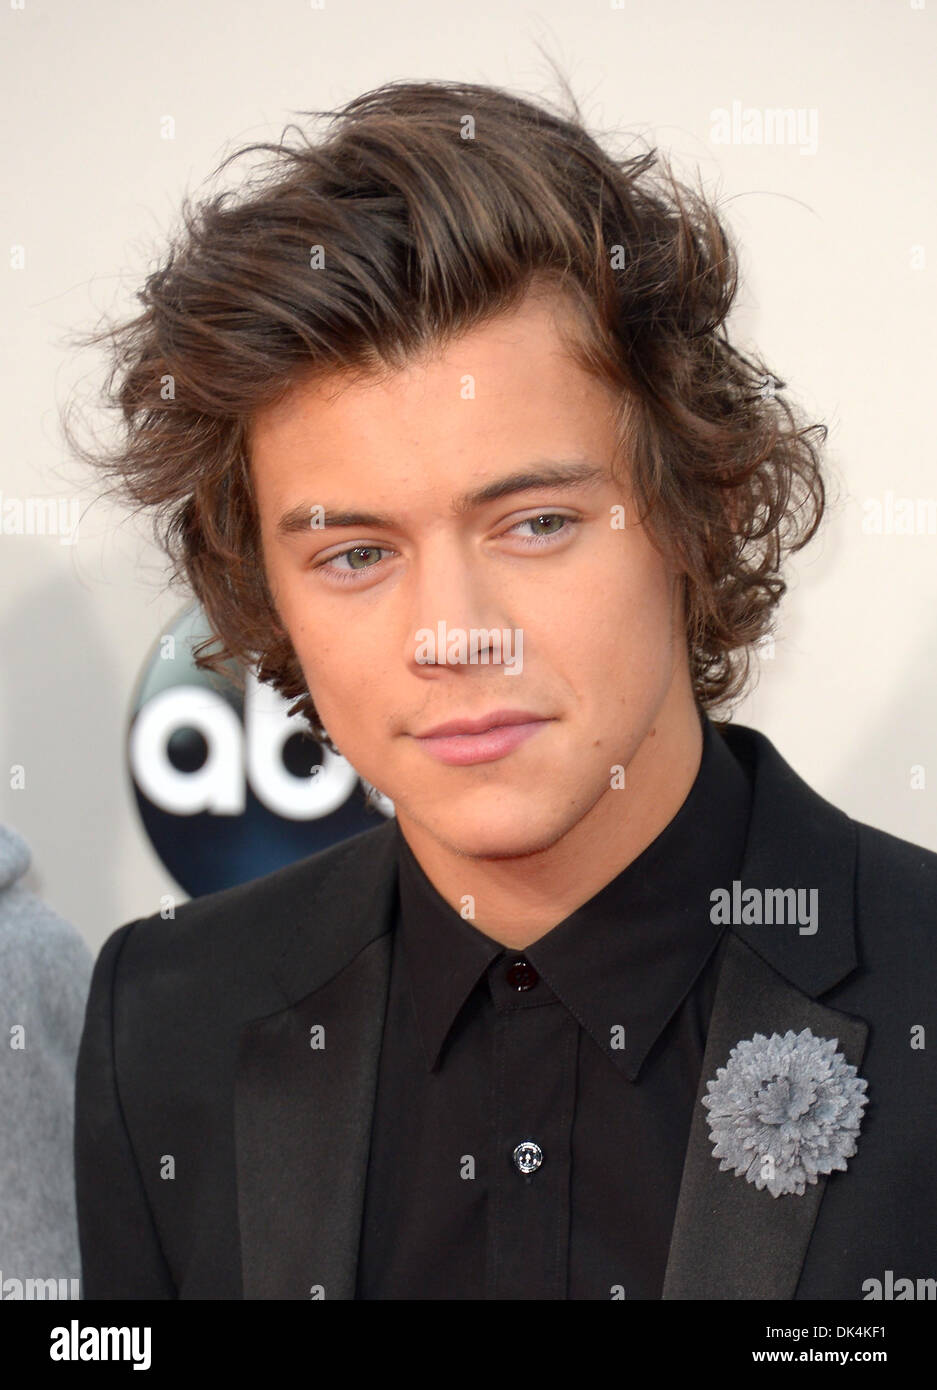 Harry Styles llega a la American Music Awards, Los Angeles, Estados Unidos - 24 Nov 2013 Foto de stock